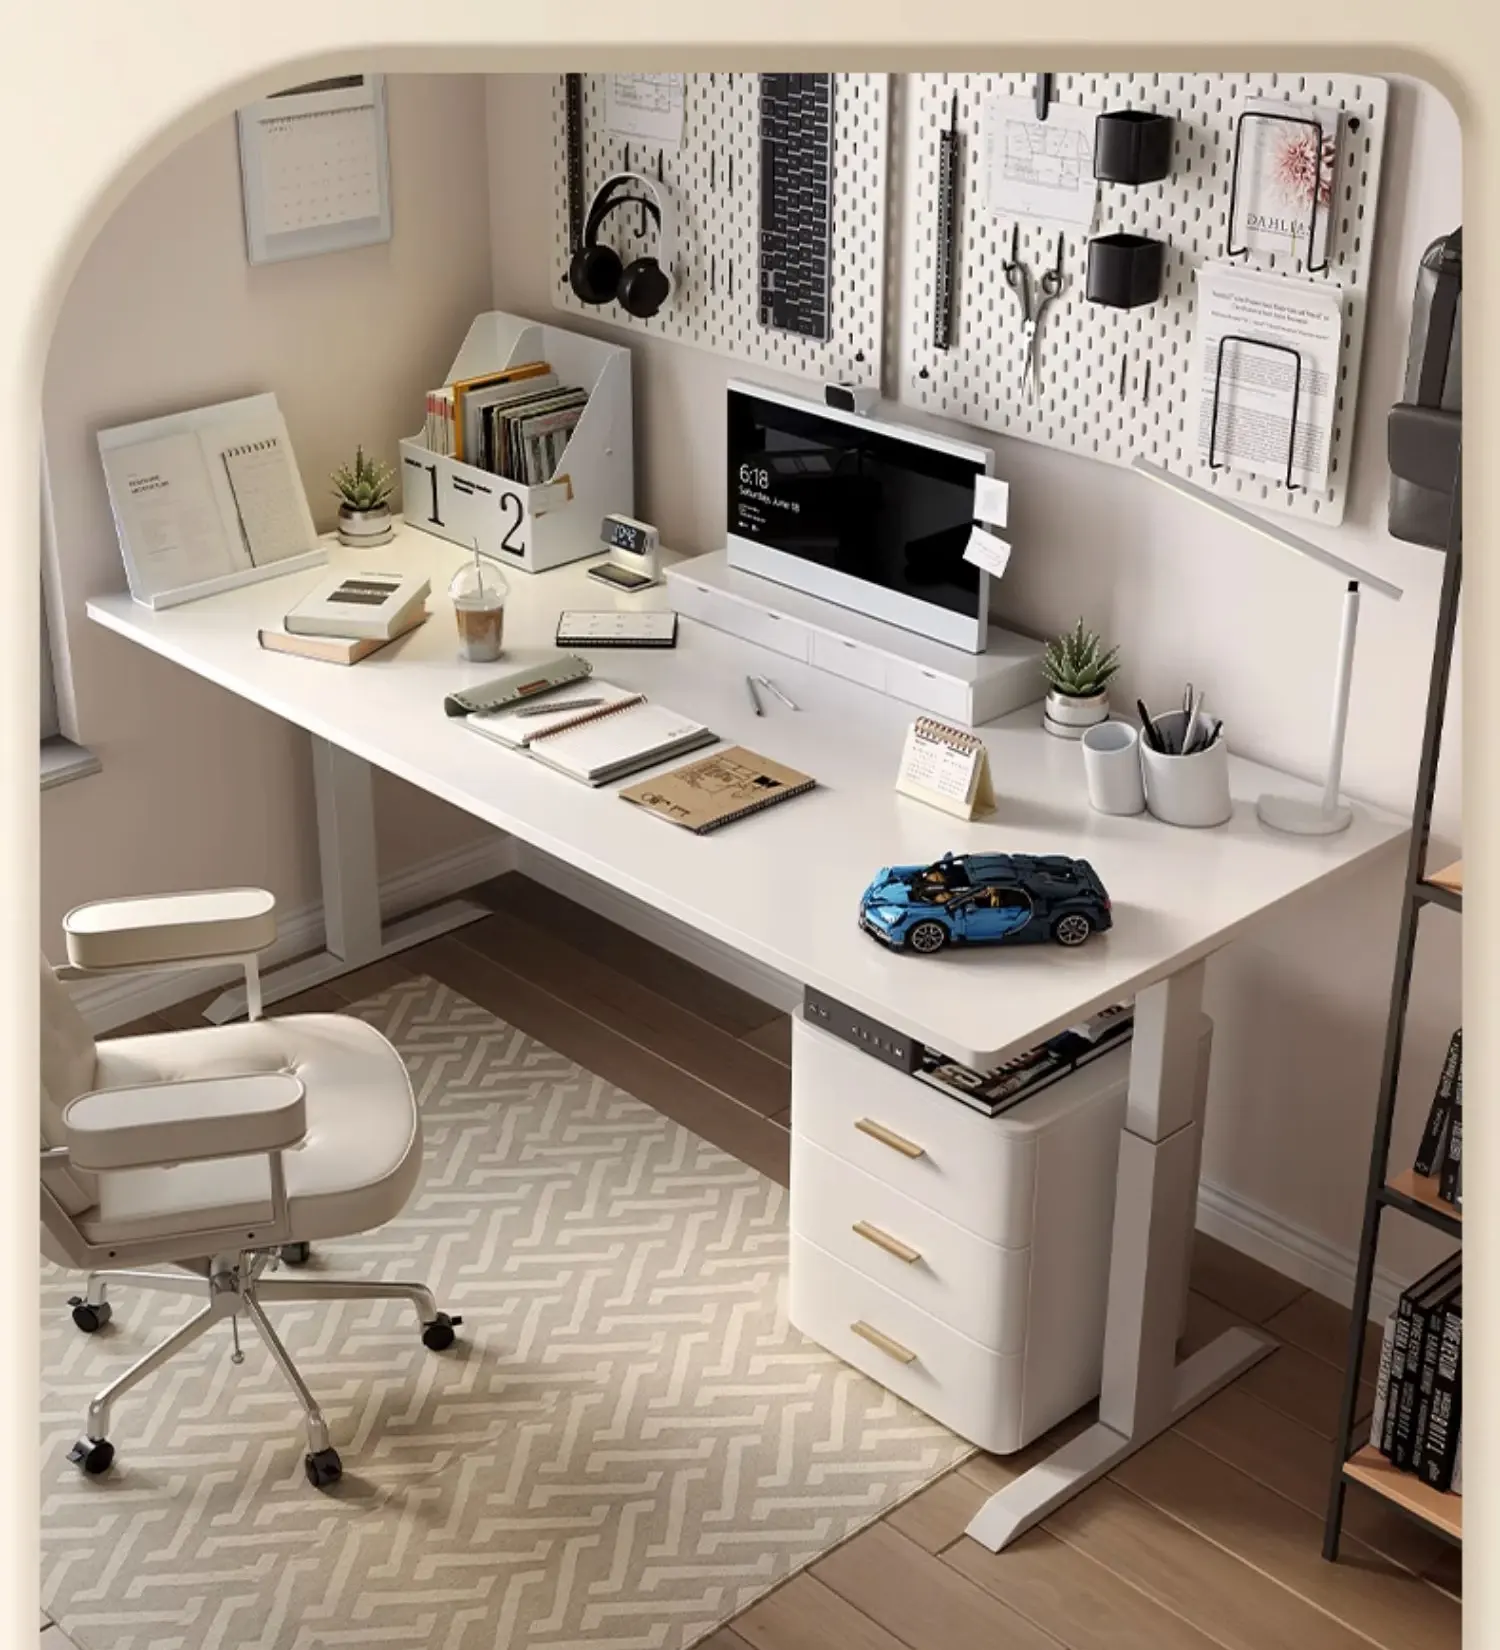 Furnitur kantor Modern ergonomis, meja berdiri elektrik dengan tinggi dapat disesuaikan